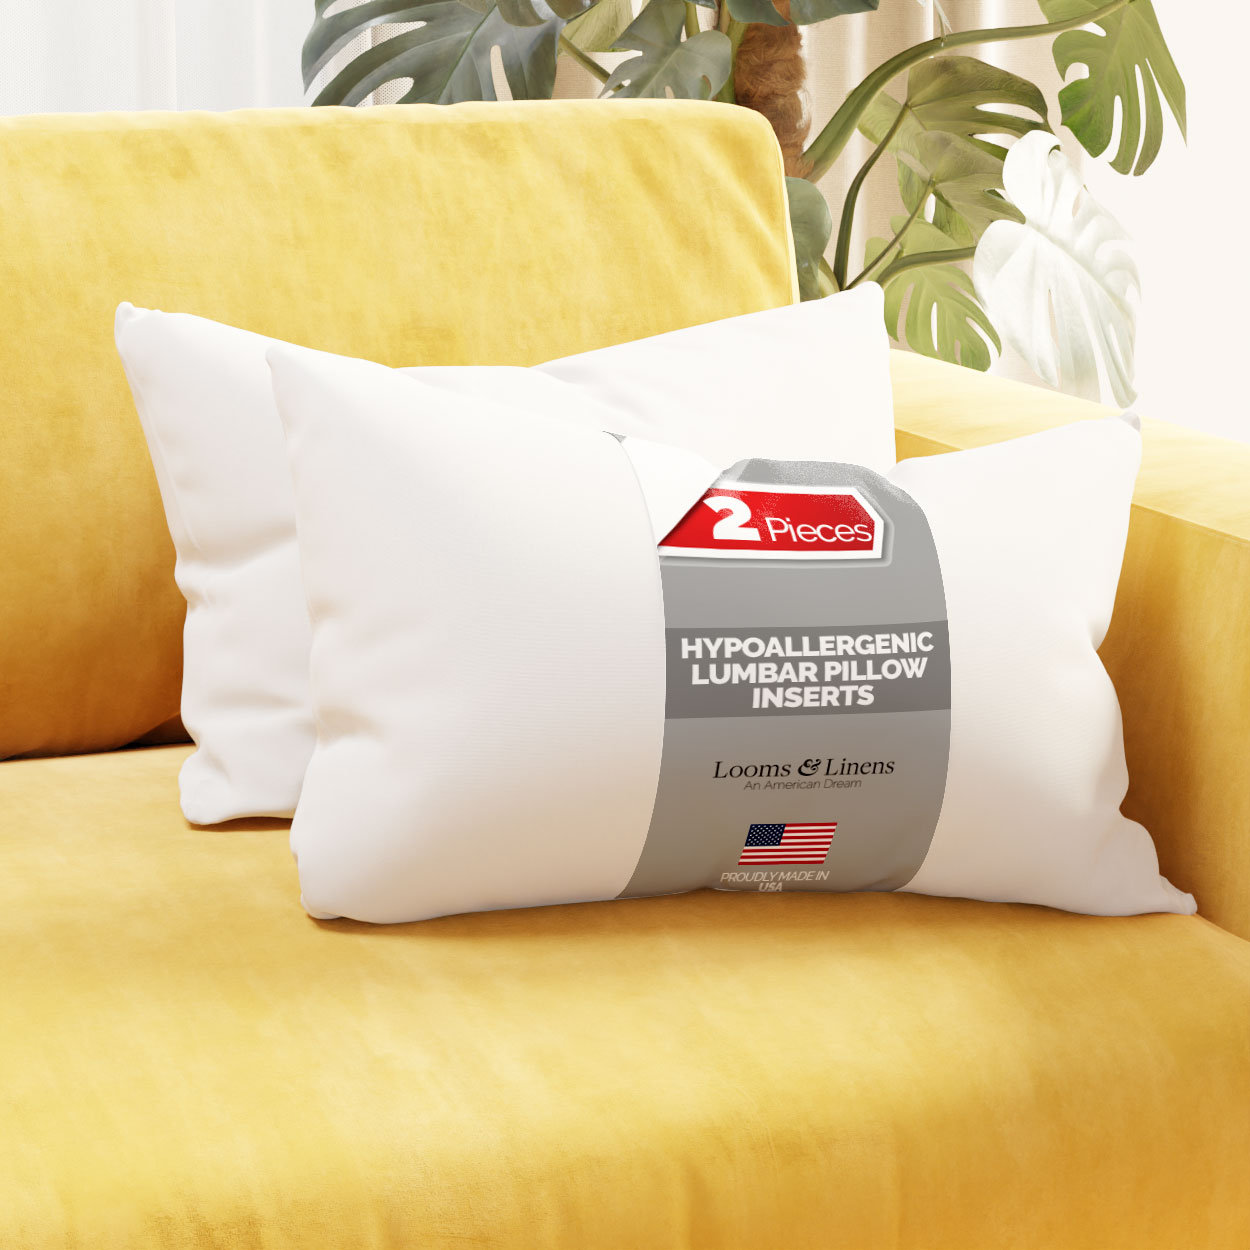 https://assets.wfcdn.com/im/30598099/compr-r85/2570/257069486/lumbar-boudoir-rectangular-back-support-pillow-inserts-looms-linens.jpg